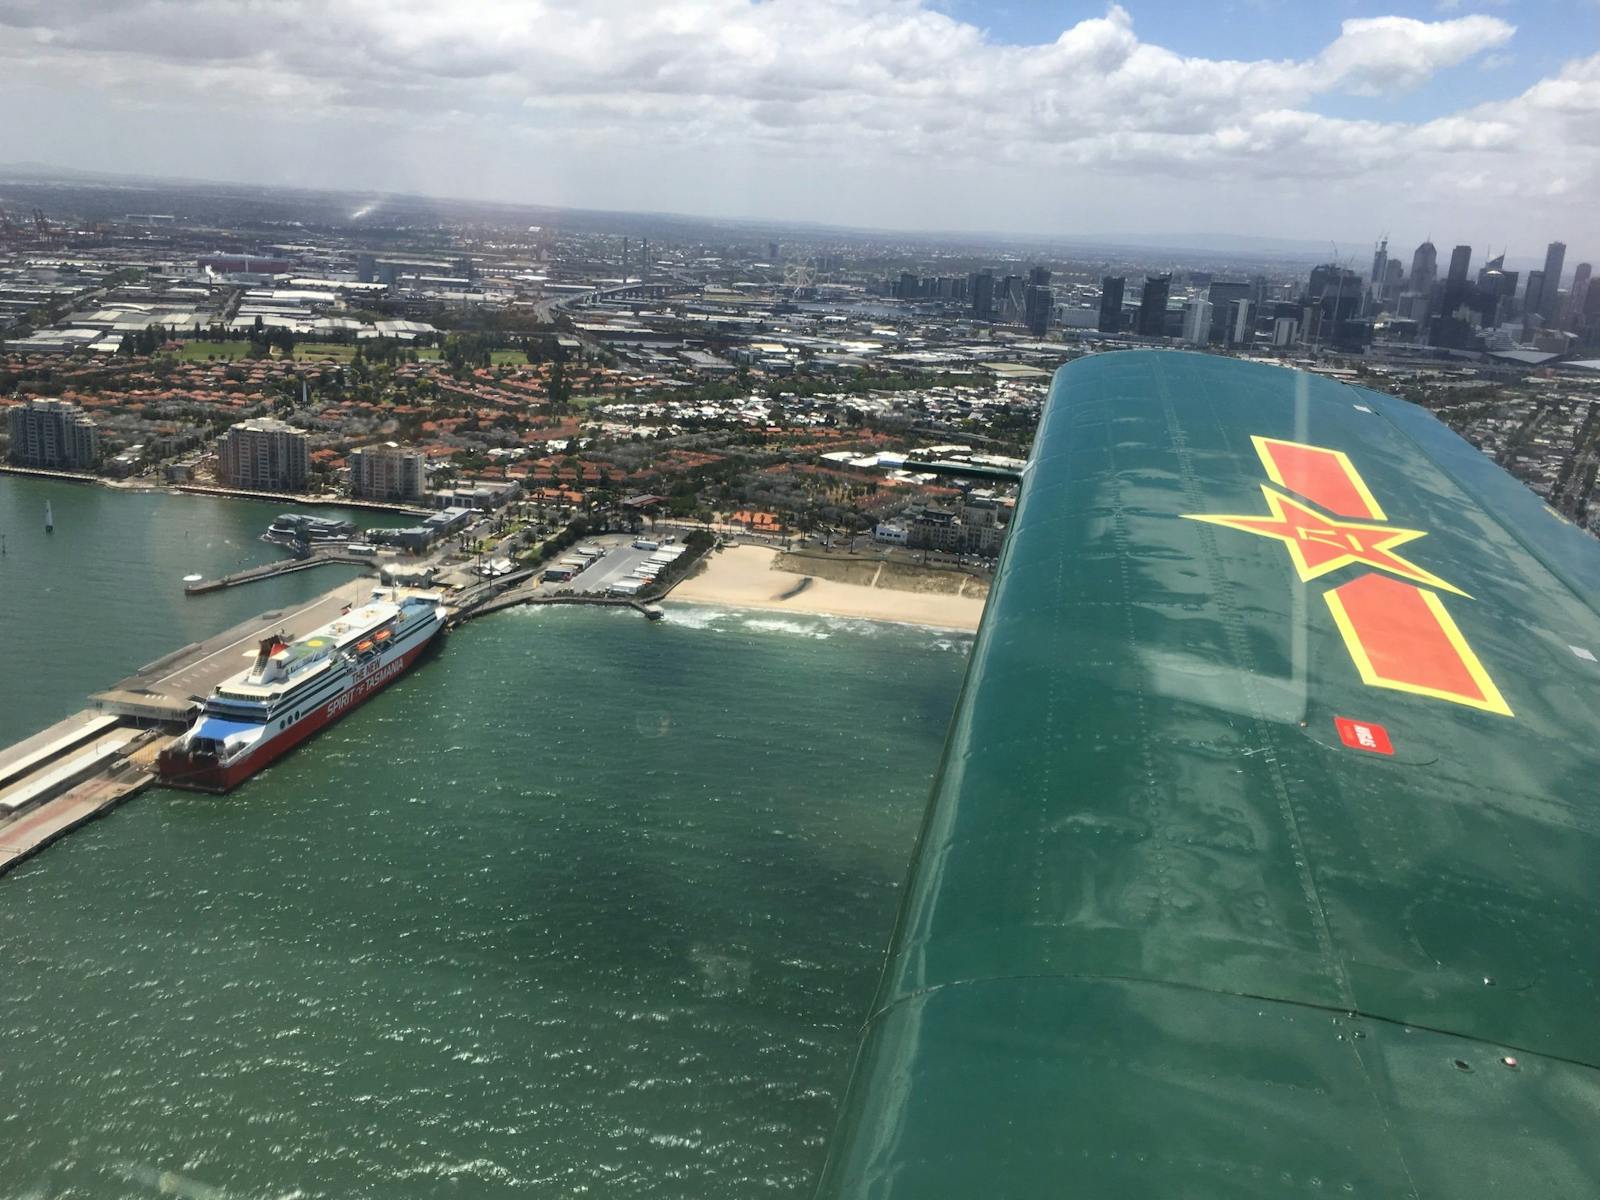 Adventure Flight Co. flies over Melbourne